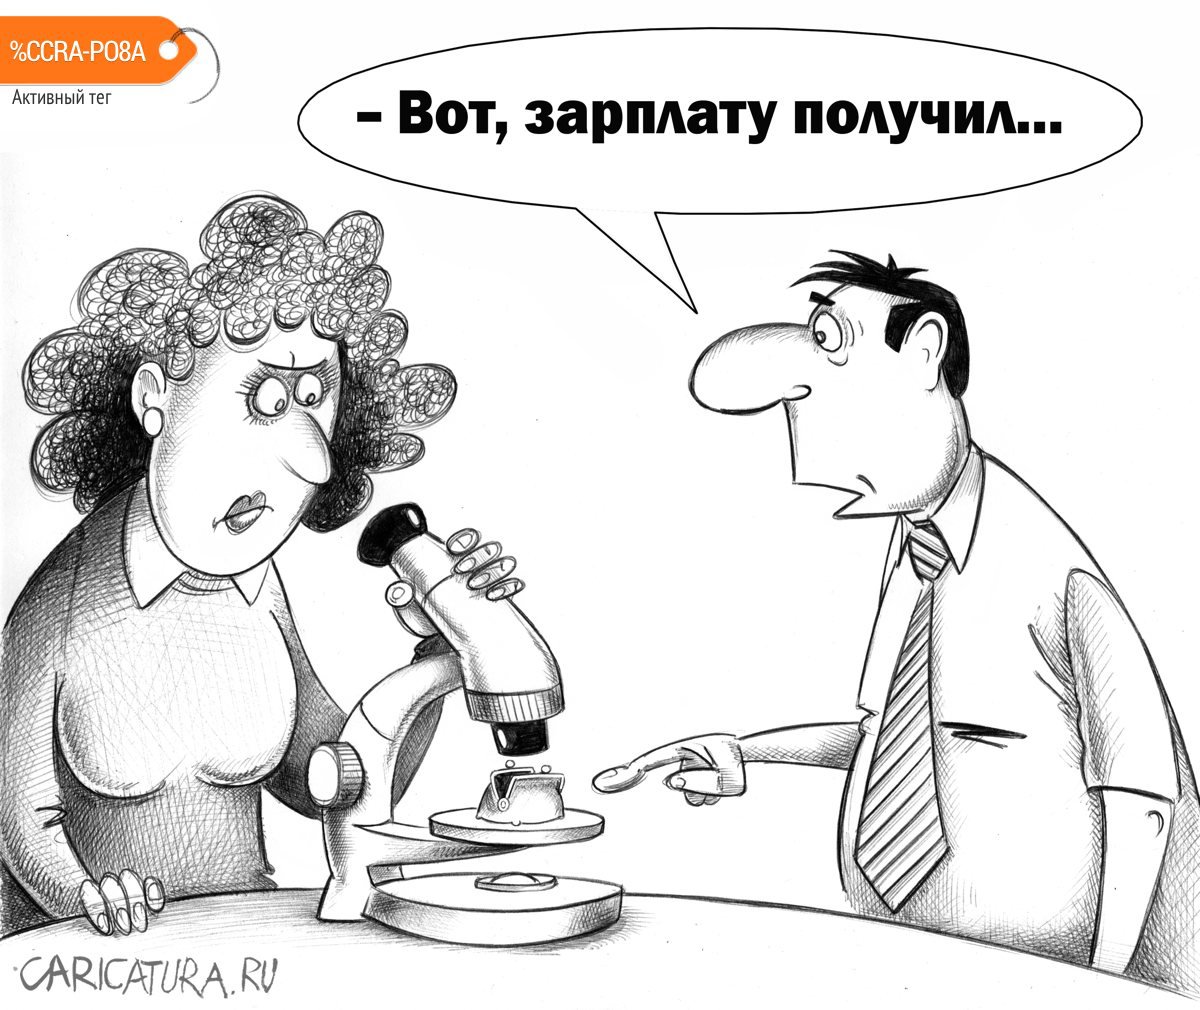 Карикатура "Зарплата", Игорь Колгарев